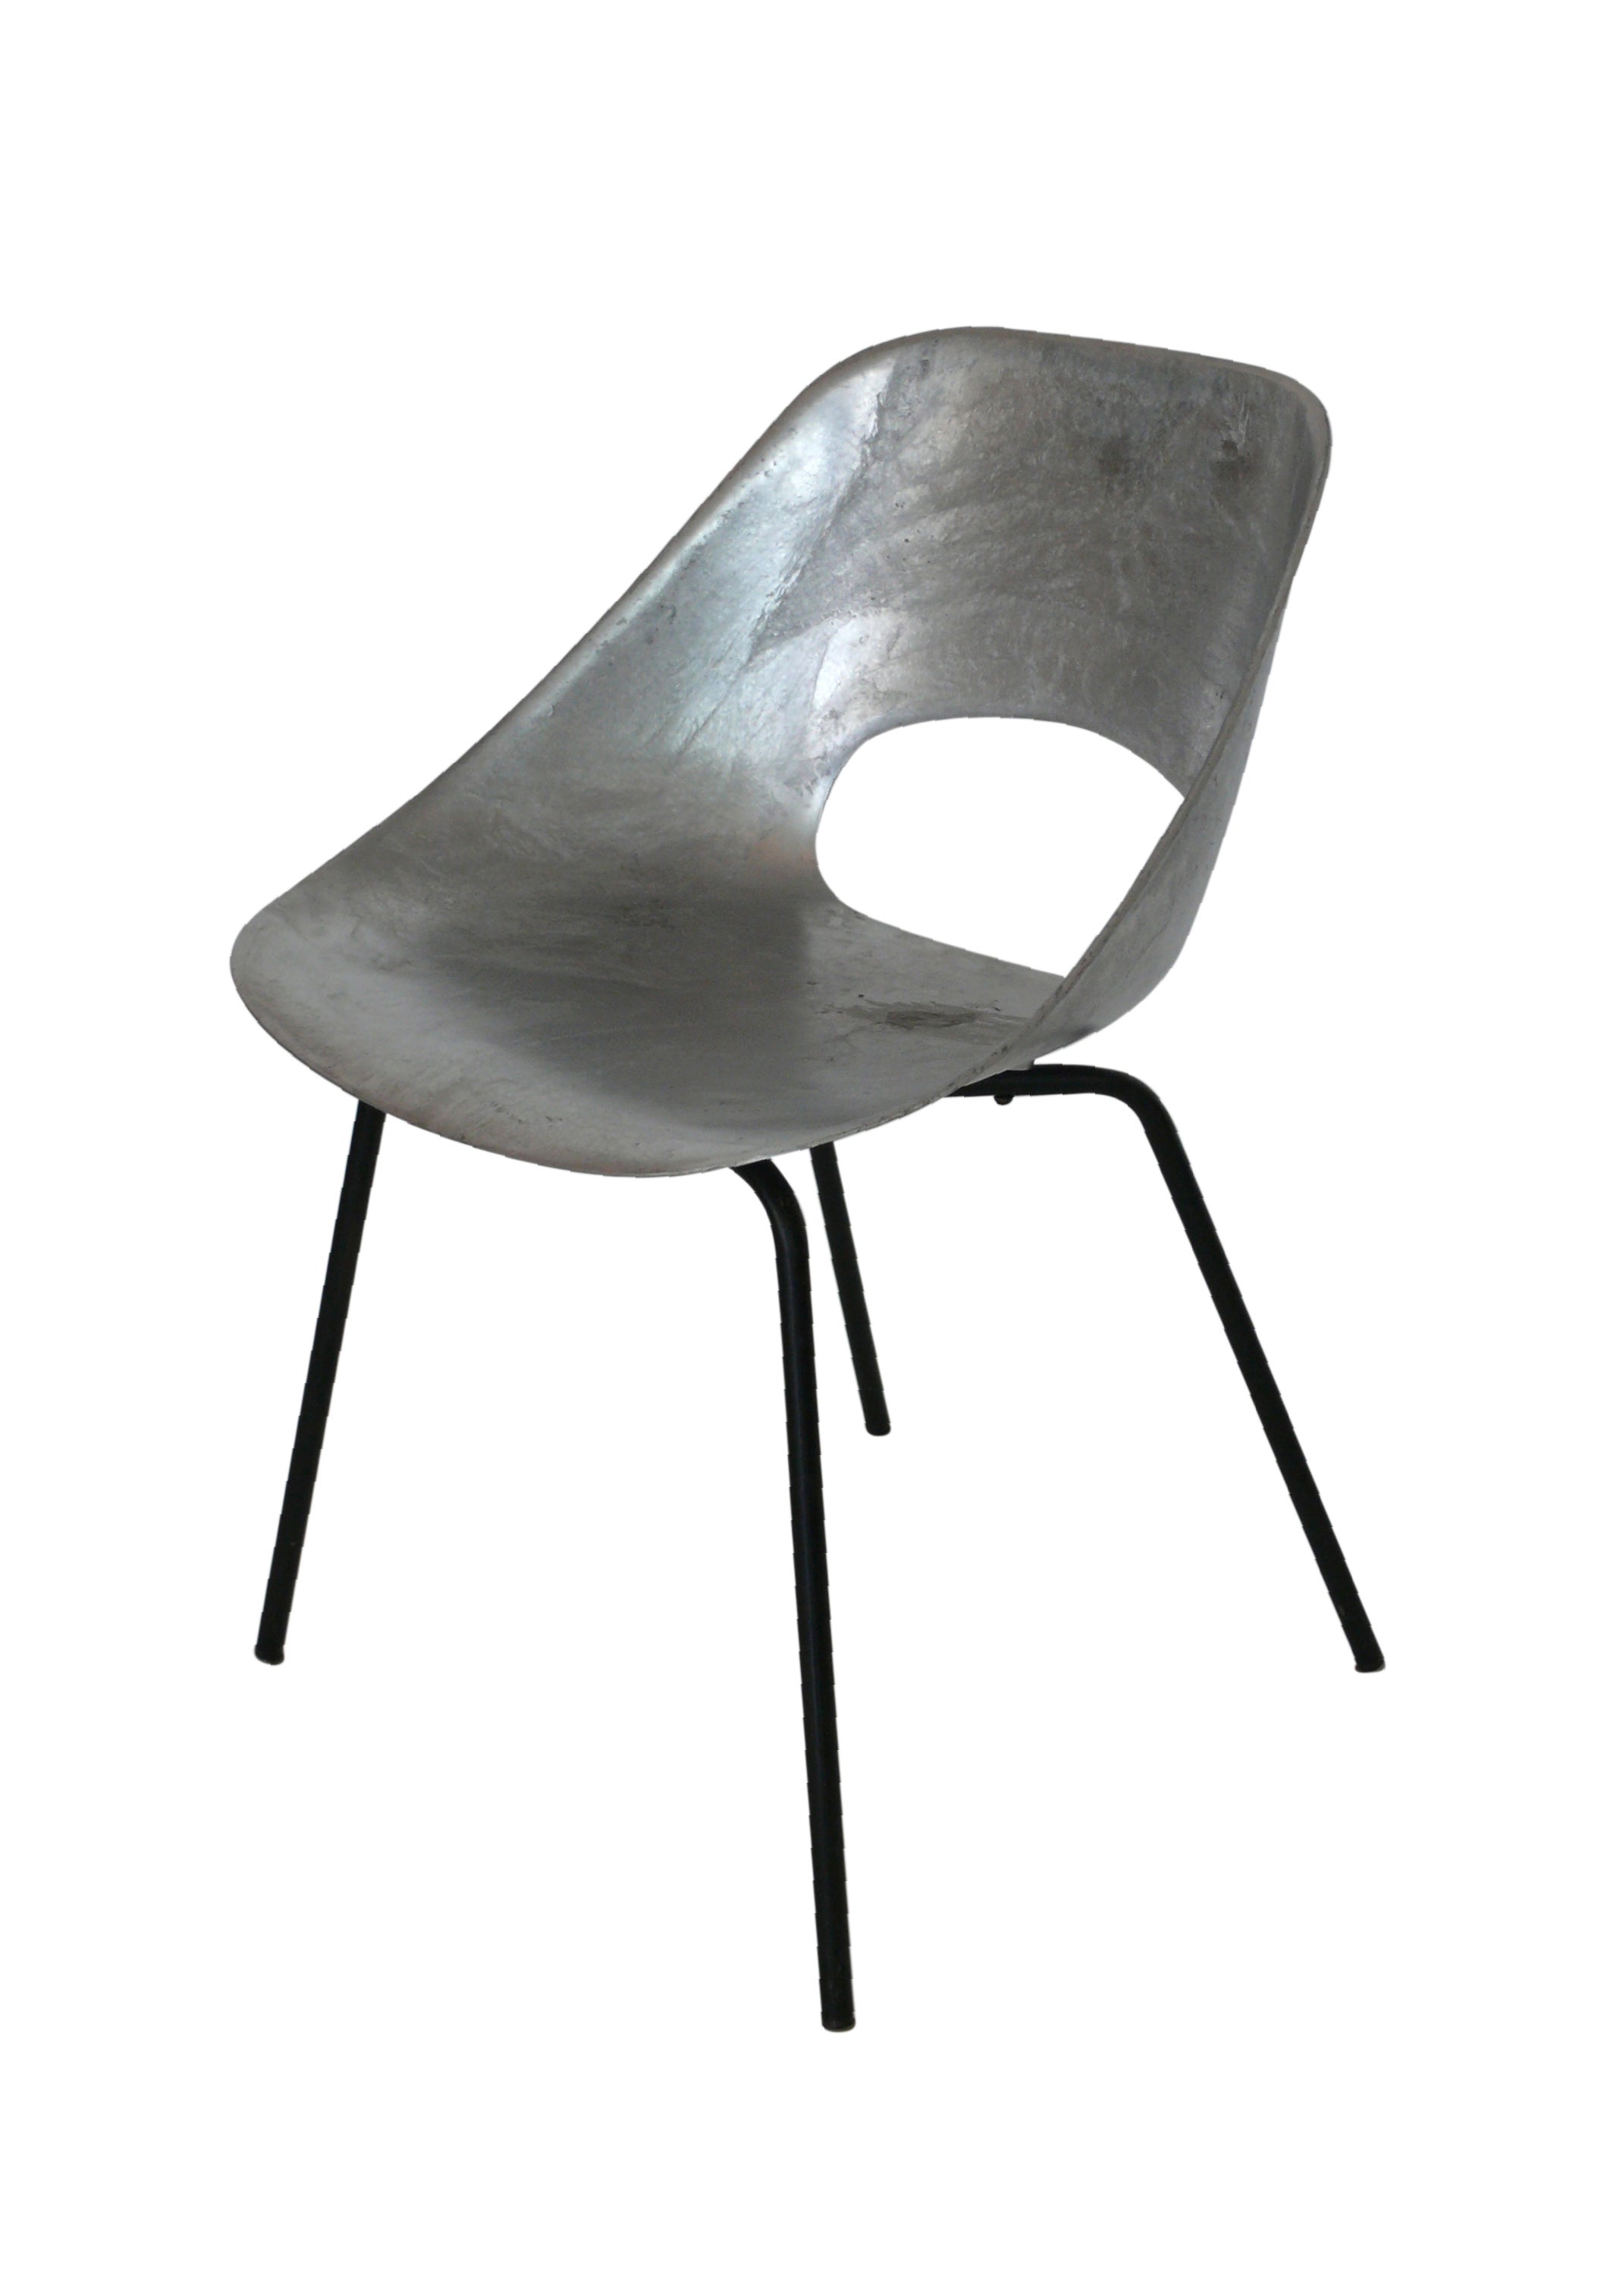 "Tonneau" Cast Aluminum Chair by Pierre Guariche